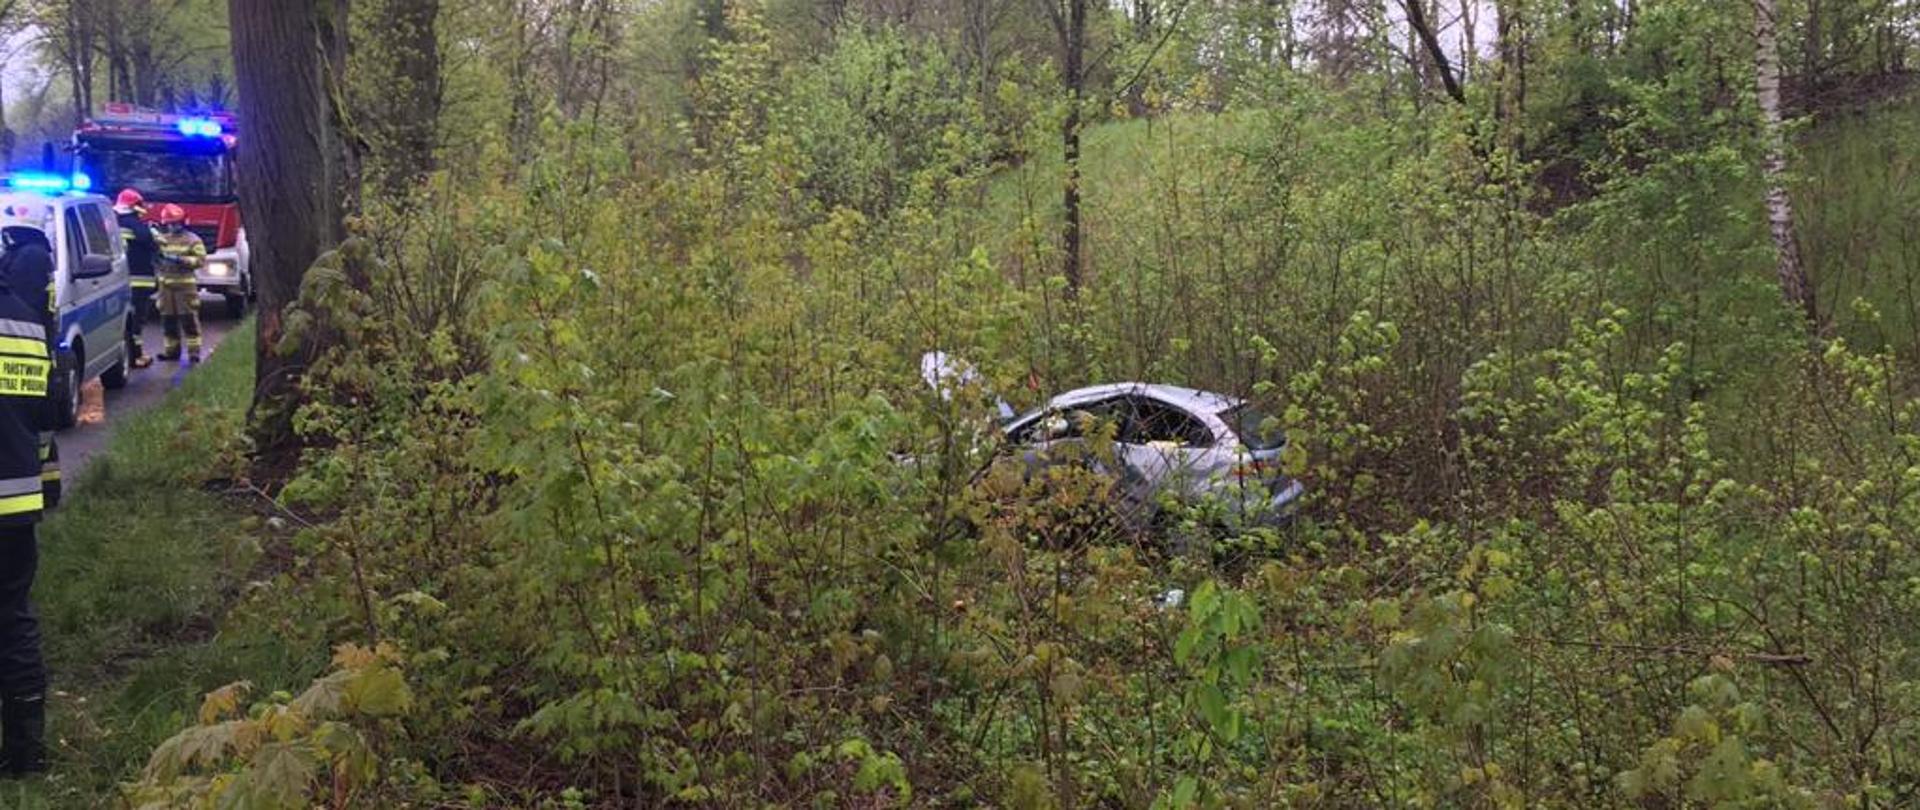 Widok rozbitego samochodu osobowego znajdującego się w lesie obok drogi.